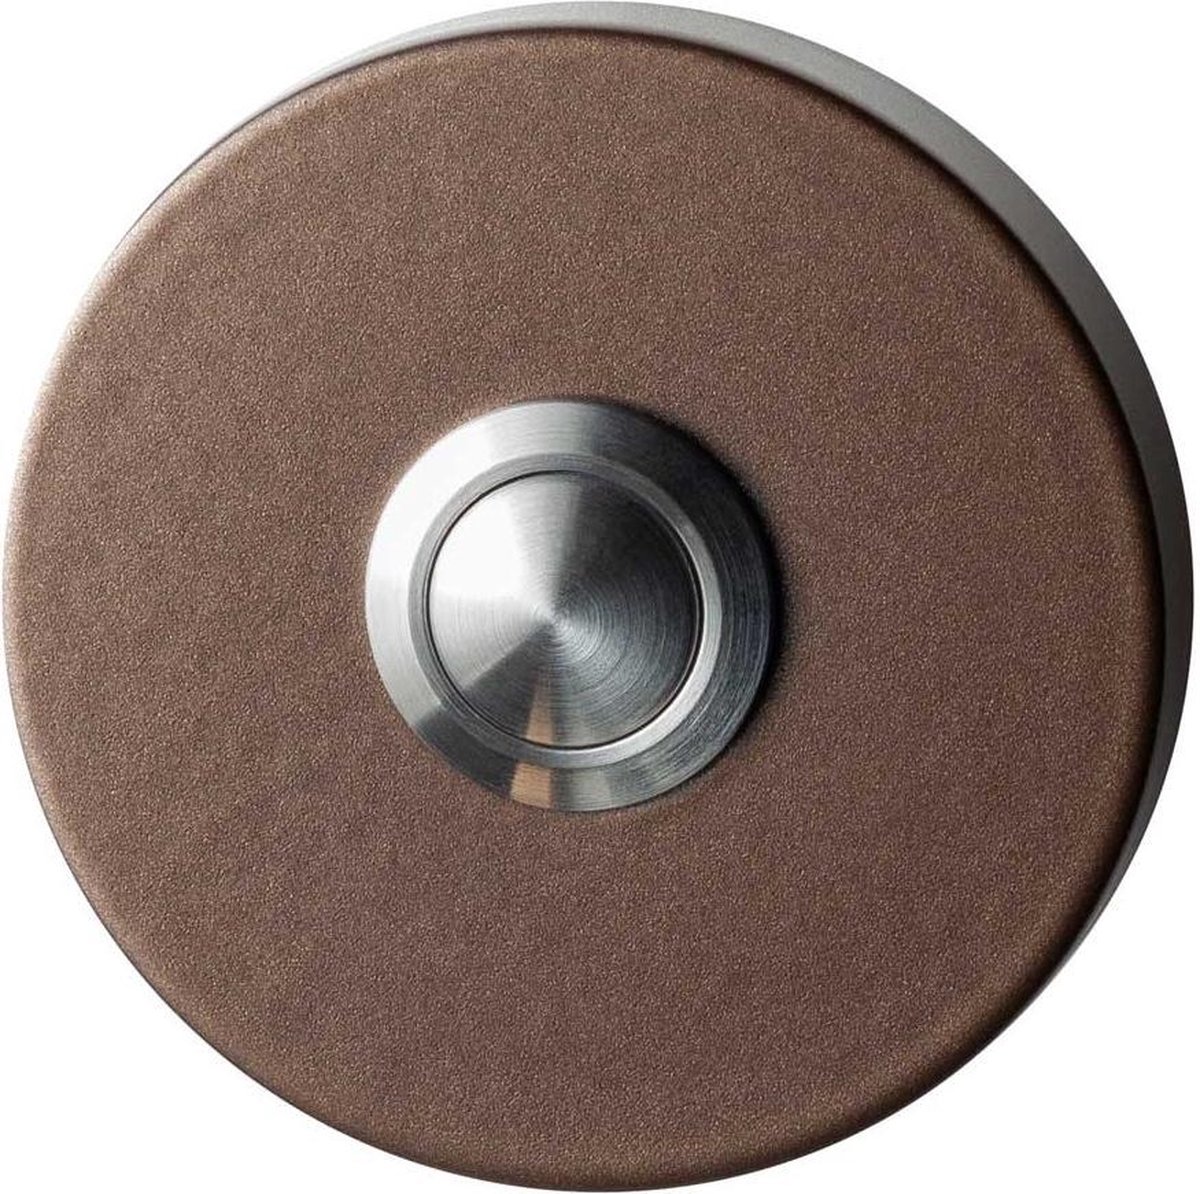 GPF9827.A2.1100 deurbel met RVS button rond 50x8 mm Bronze blend